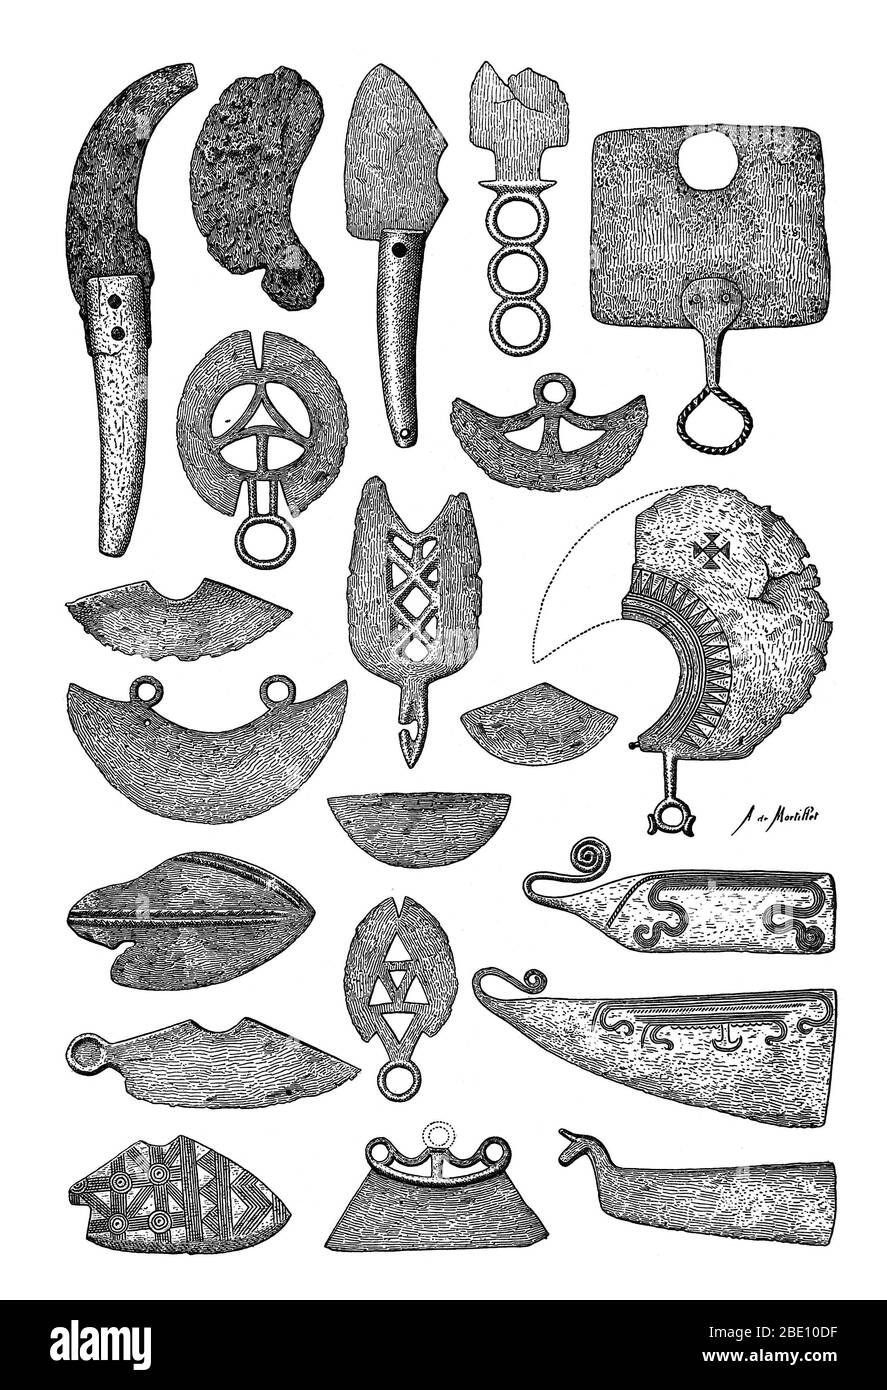 Illustrazione di rasoi preistorici in bronzo. Il più vecchio oggetto simile a un rasoio è stato datato al 18,000 a.C. Foto Stock